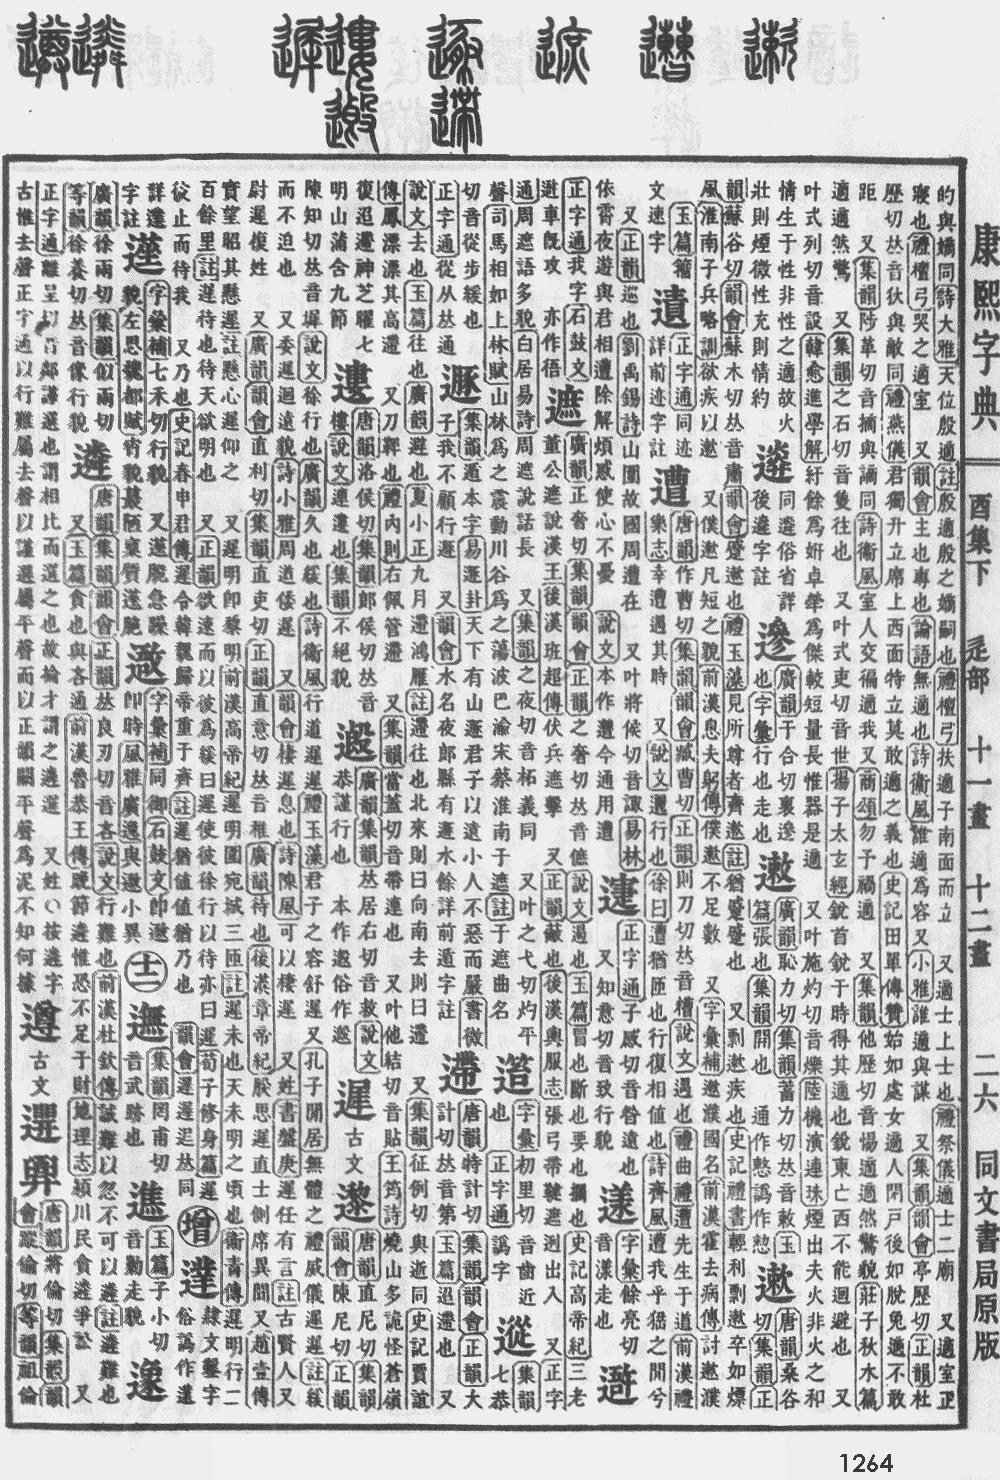 康熙字典第1264页图片